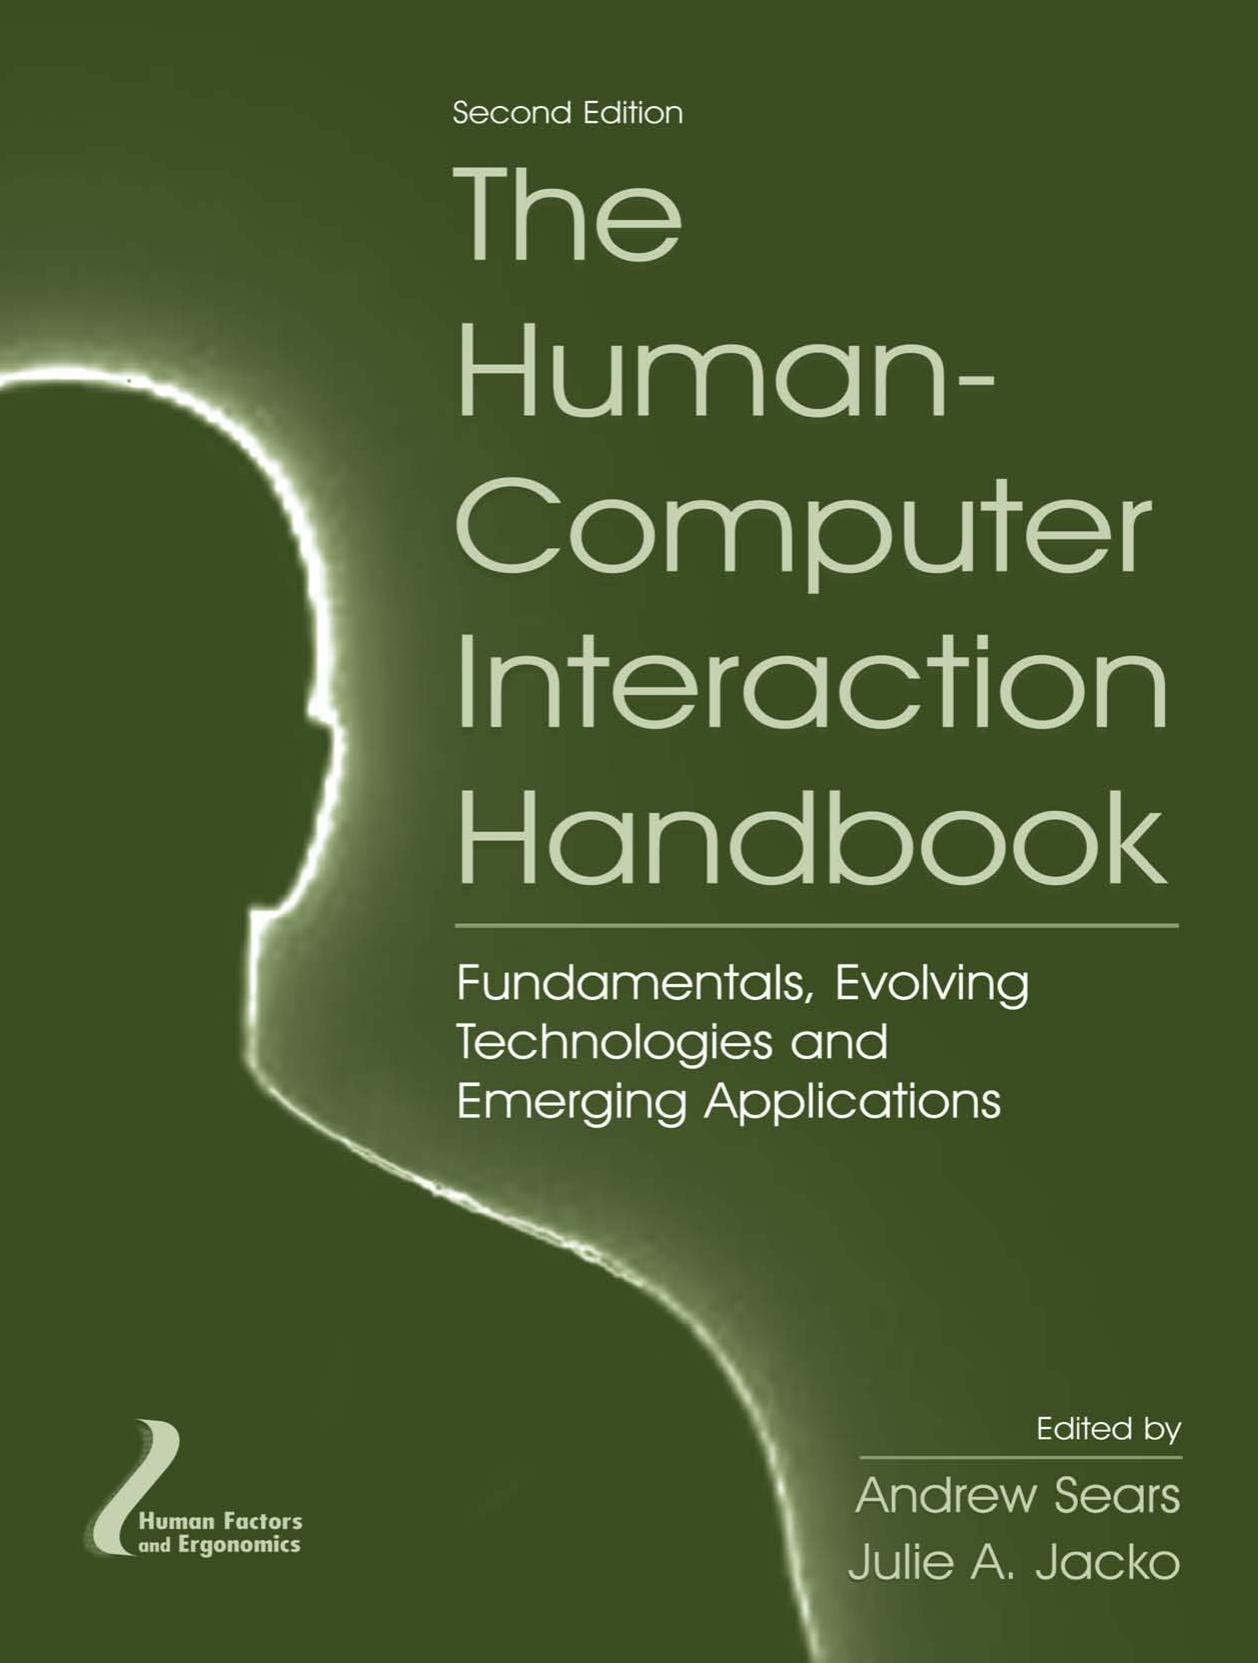 The Human-Computer Interaction Handbook Fundamentals, Evolving Technologies & Emerging Applications, Second Edition (Human Factors & Ergonomics) (2007)